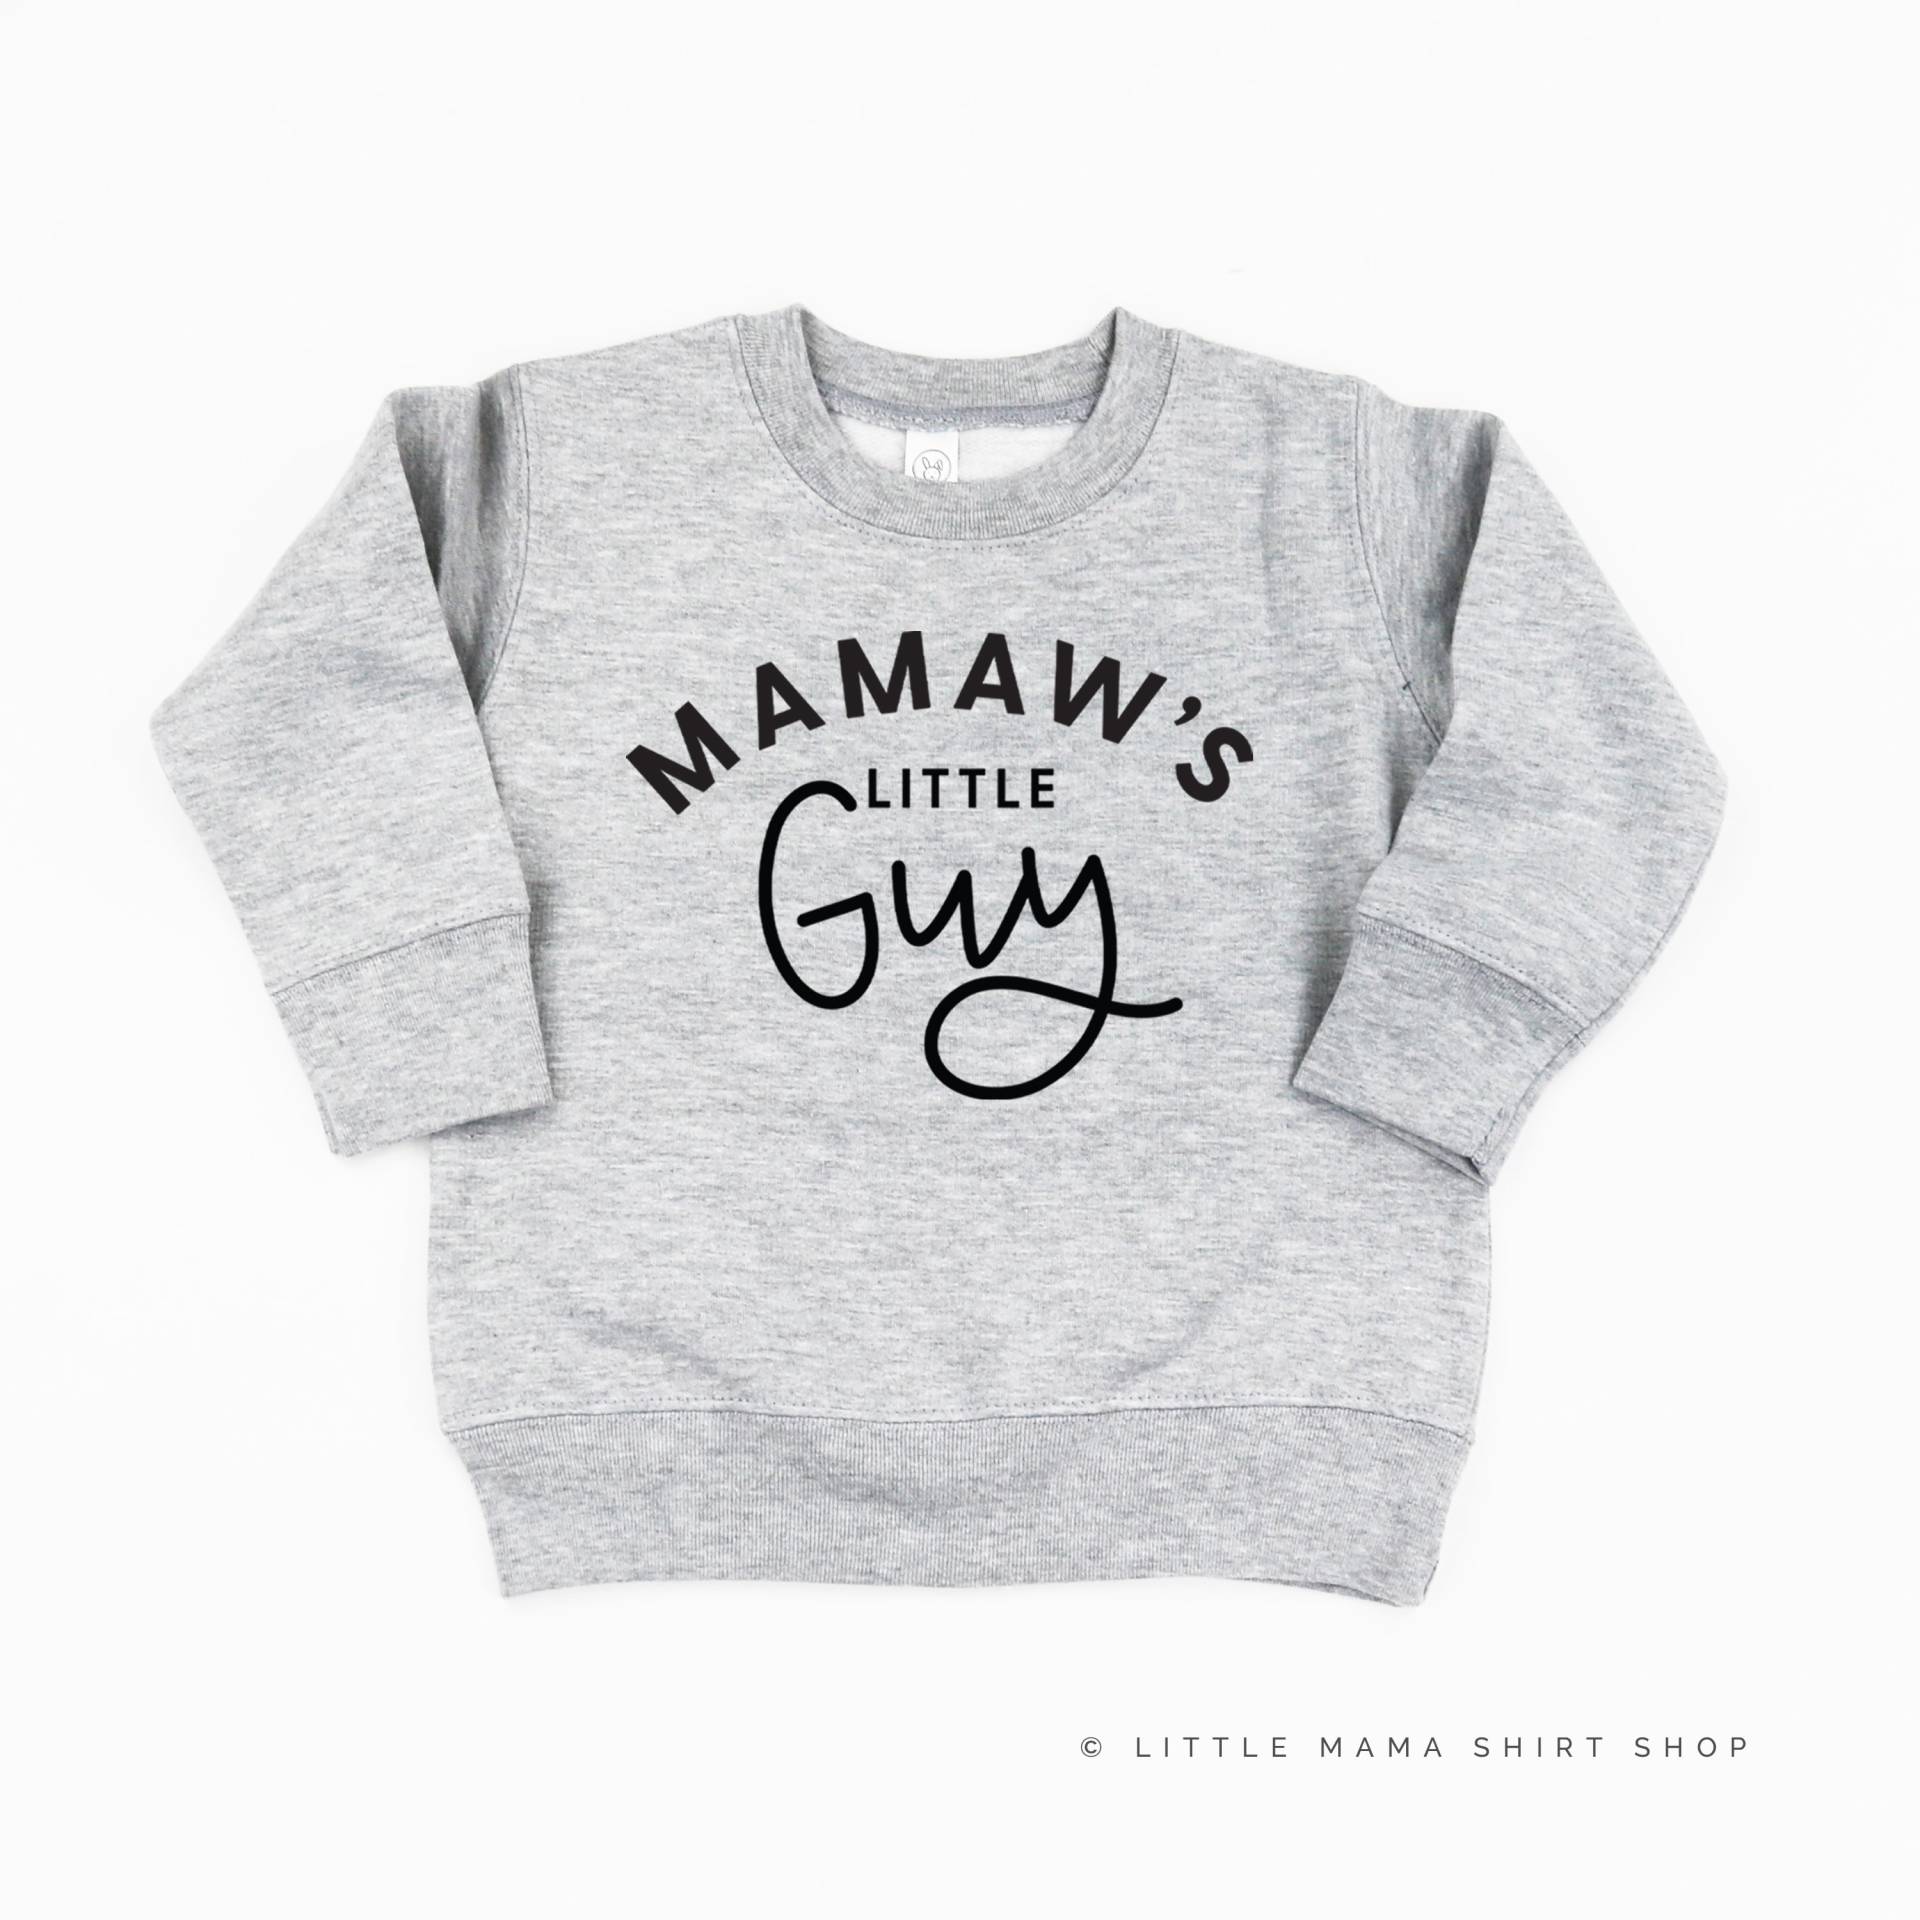 Mamaw Es Little Guy - Kinderpullover | Kleinkind Jungesweater Pullover Für Kleine Jungs Kleiner Junge Omas Kerl von LittleMamaShirtShop